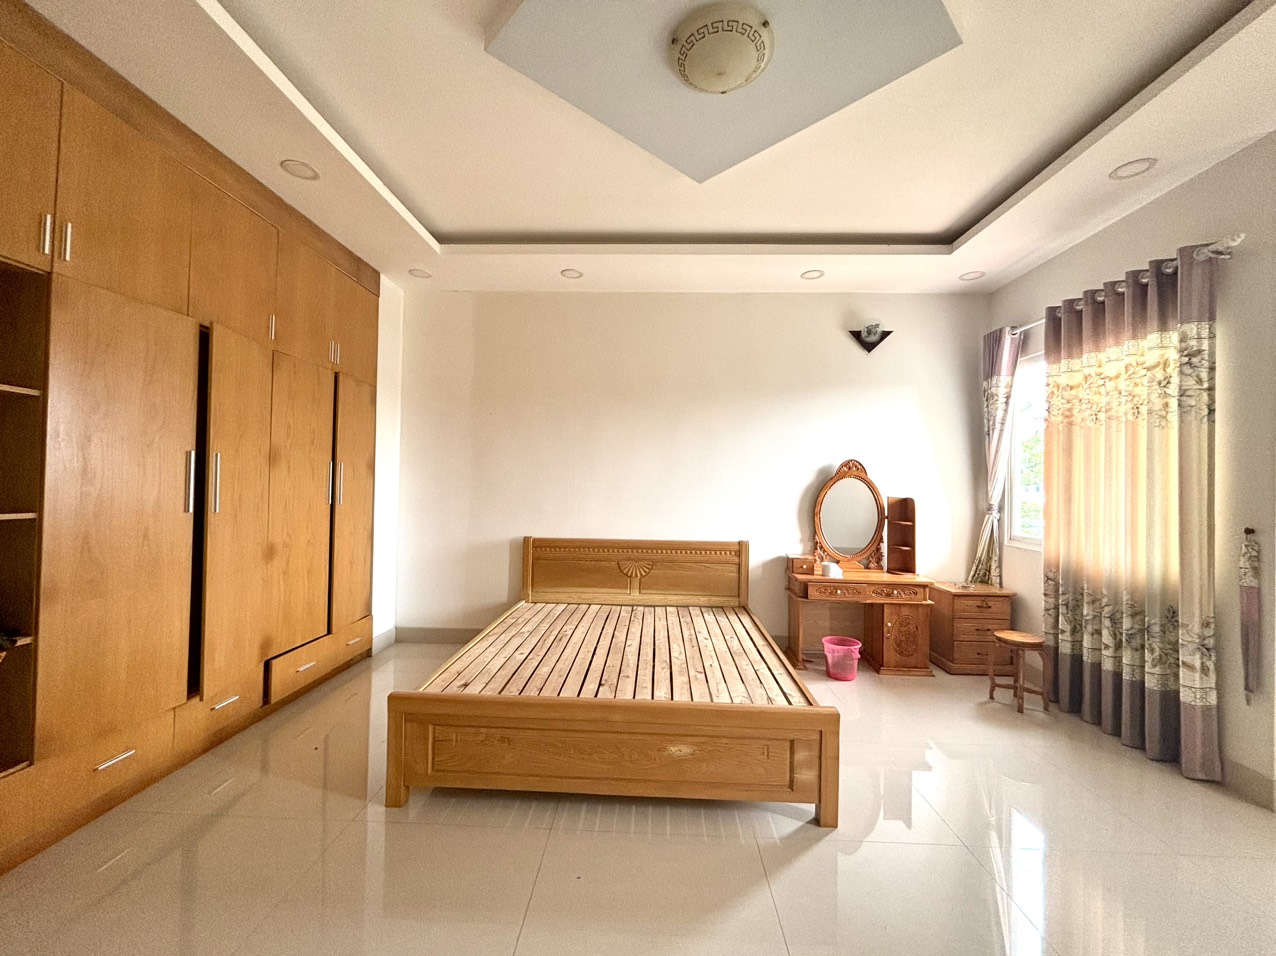 Cho thuê căn biệt thự vườn 150m2, nội thất hiện đại tại Làng Chuyên gia The Oasis, Thuận An, BD - Ảnh 2